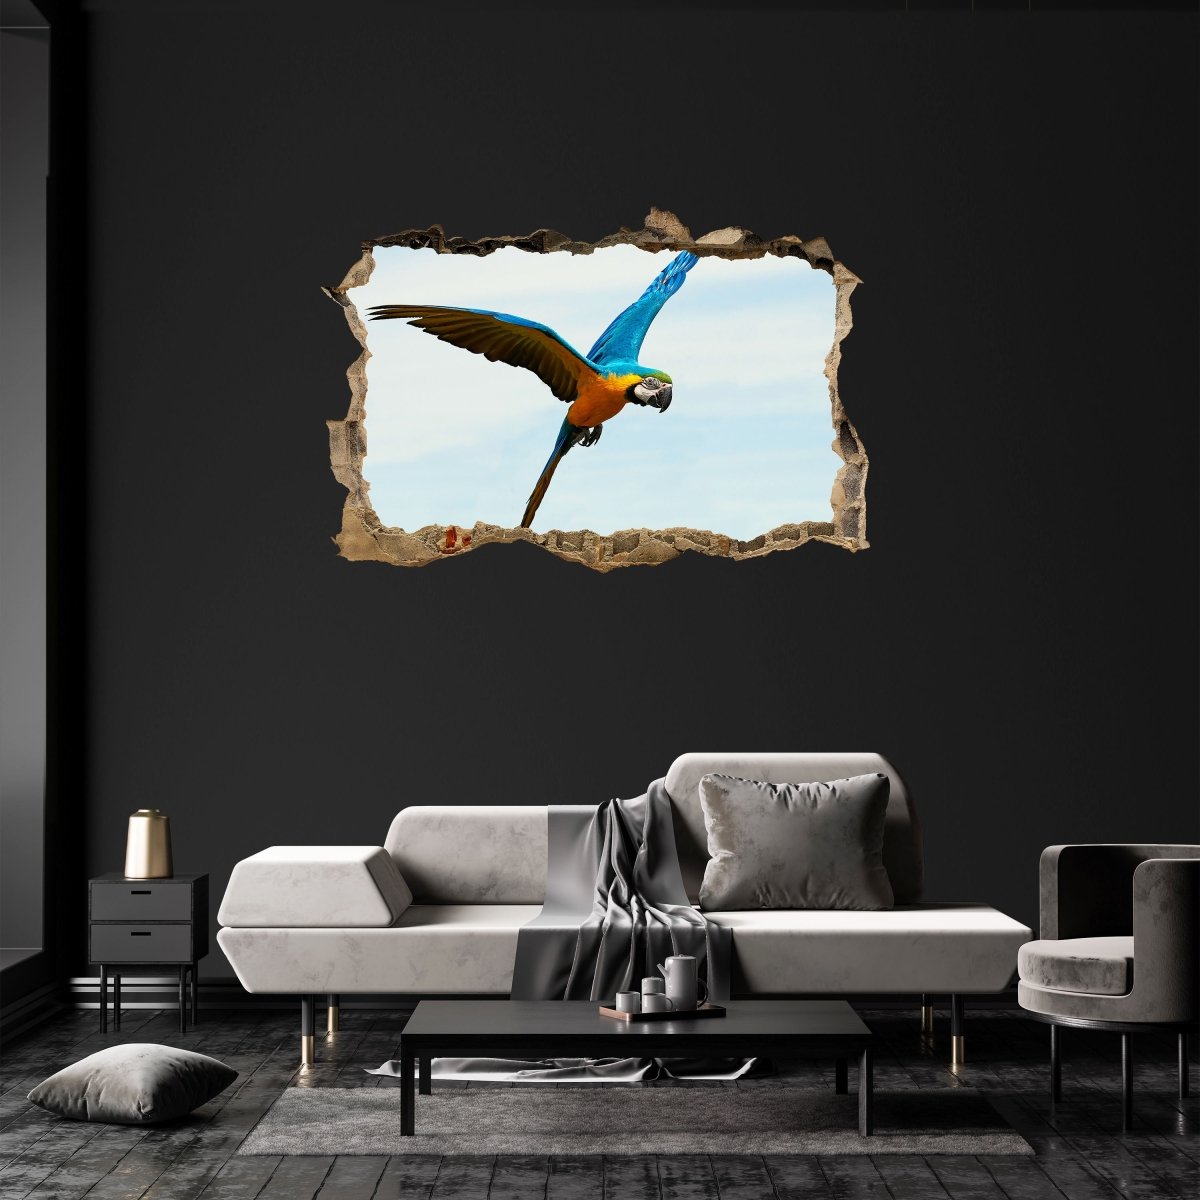 3D wall sticker parrot in flight blue yellow bird animal - Wall Decal M1242